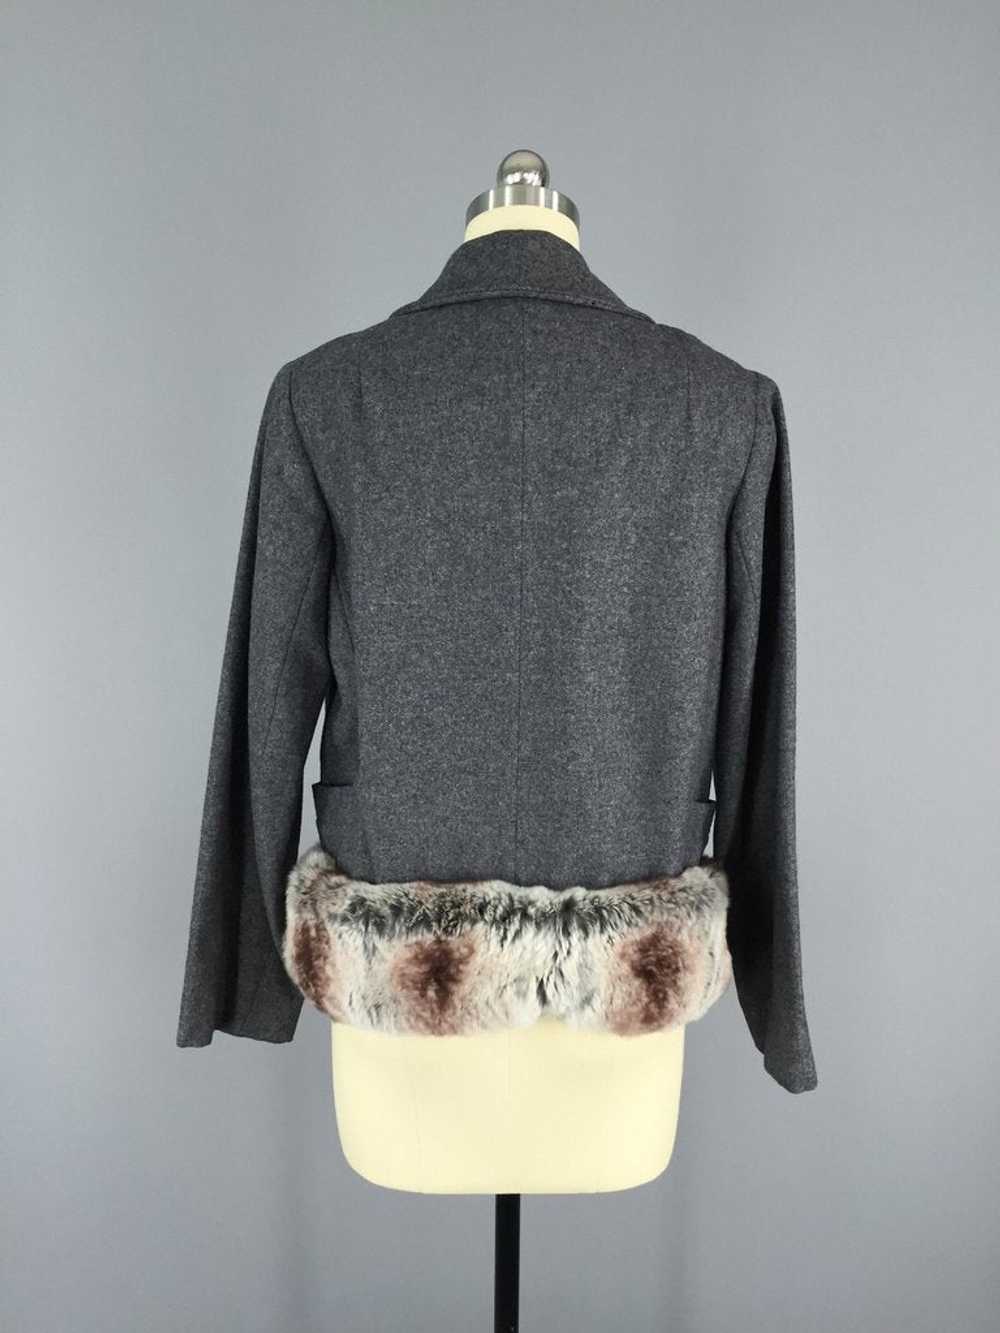 Vintage 1940s Grey Wool Jacket with Fur Trim - image 6